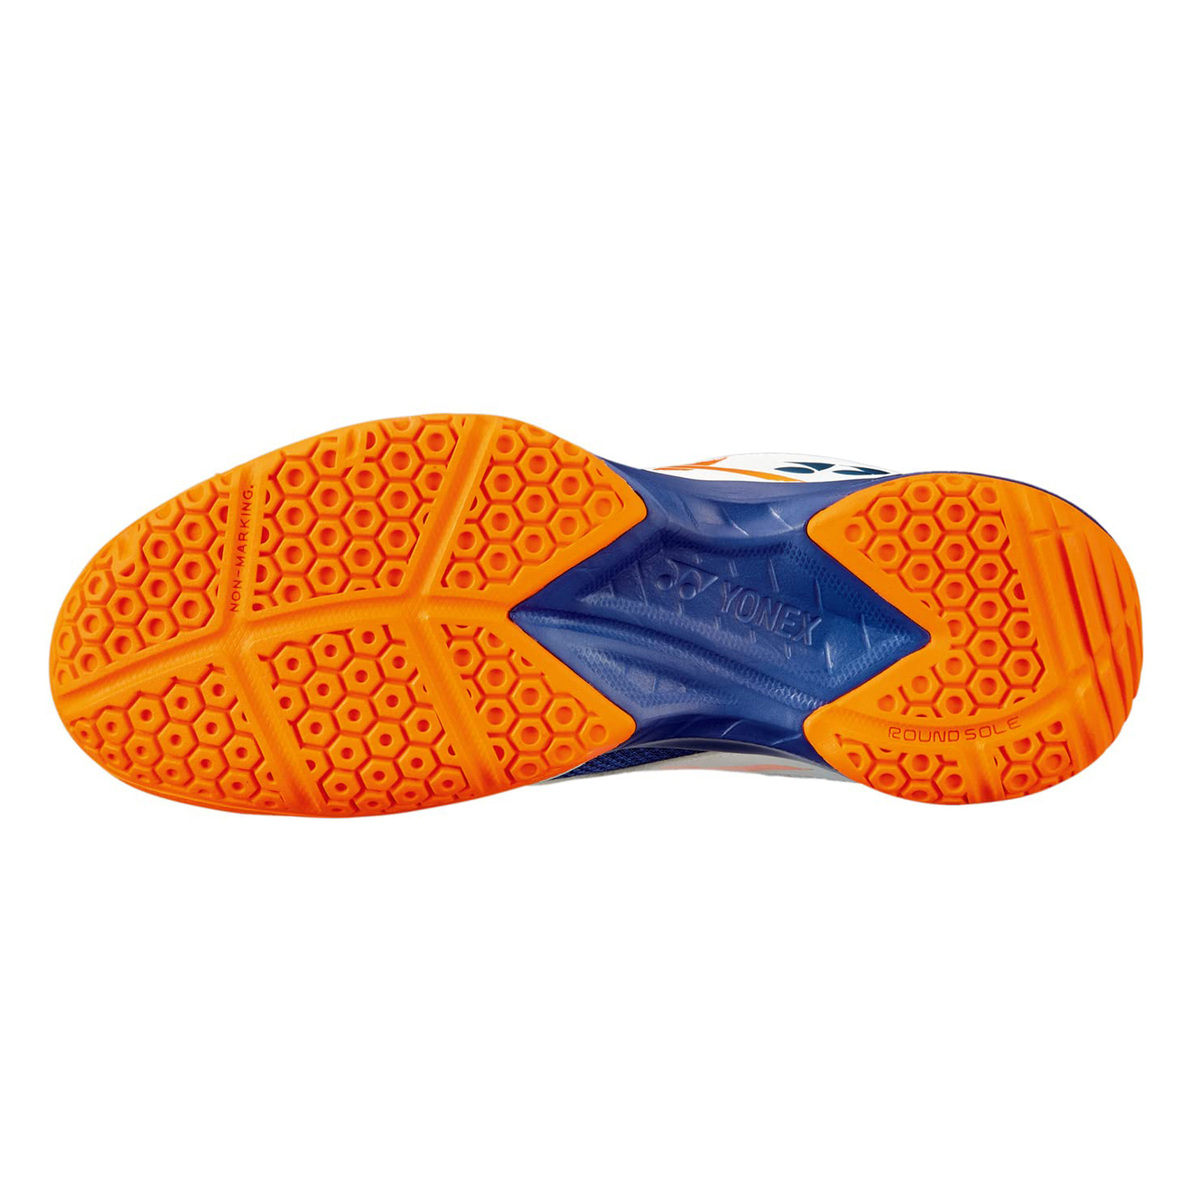 يونيكس حذاء تنس الريشة للرجال، SHB39EX، أبيض/برتقالي، 40